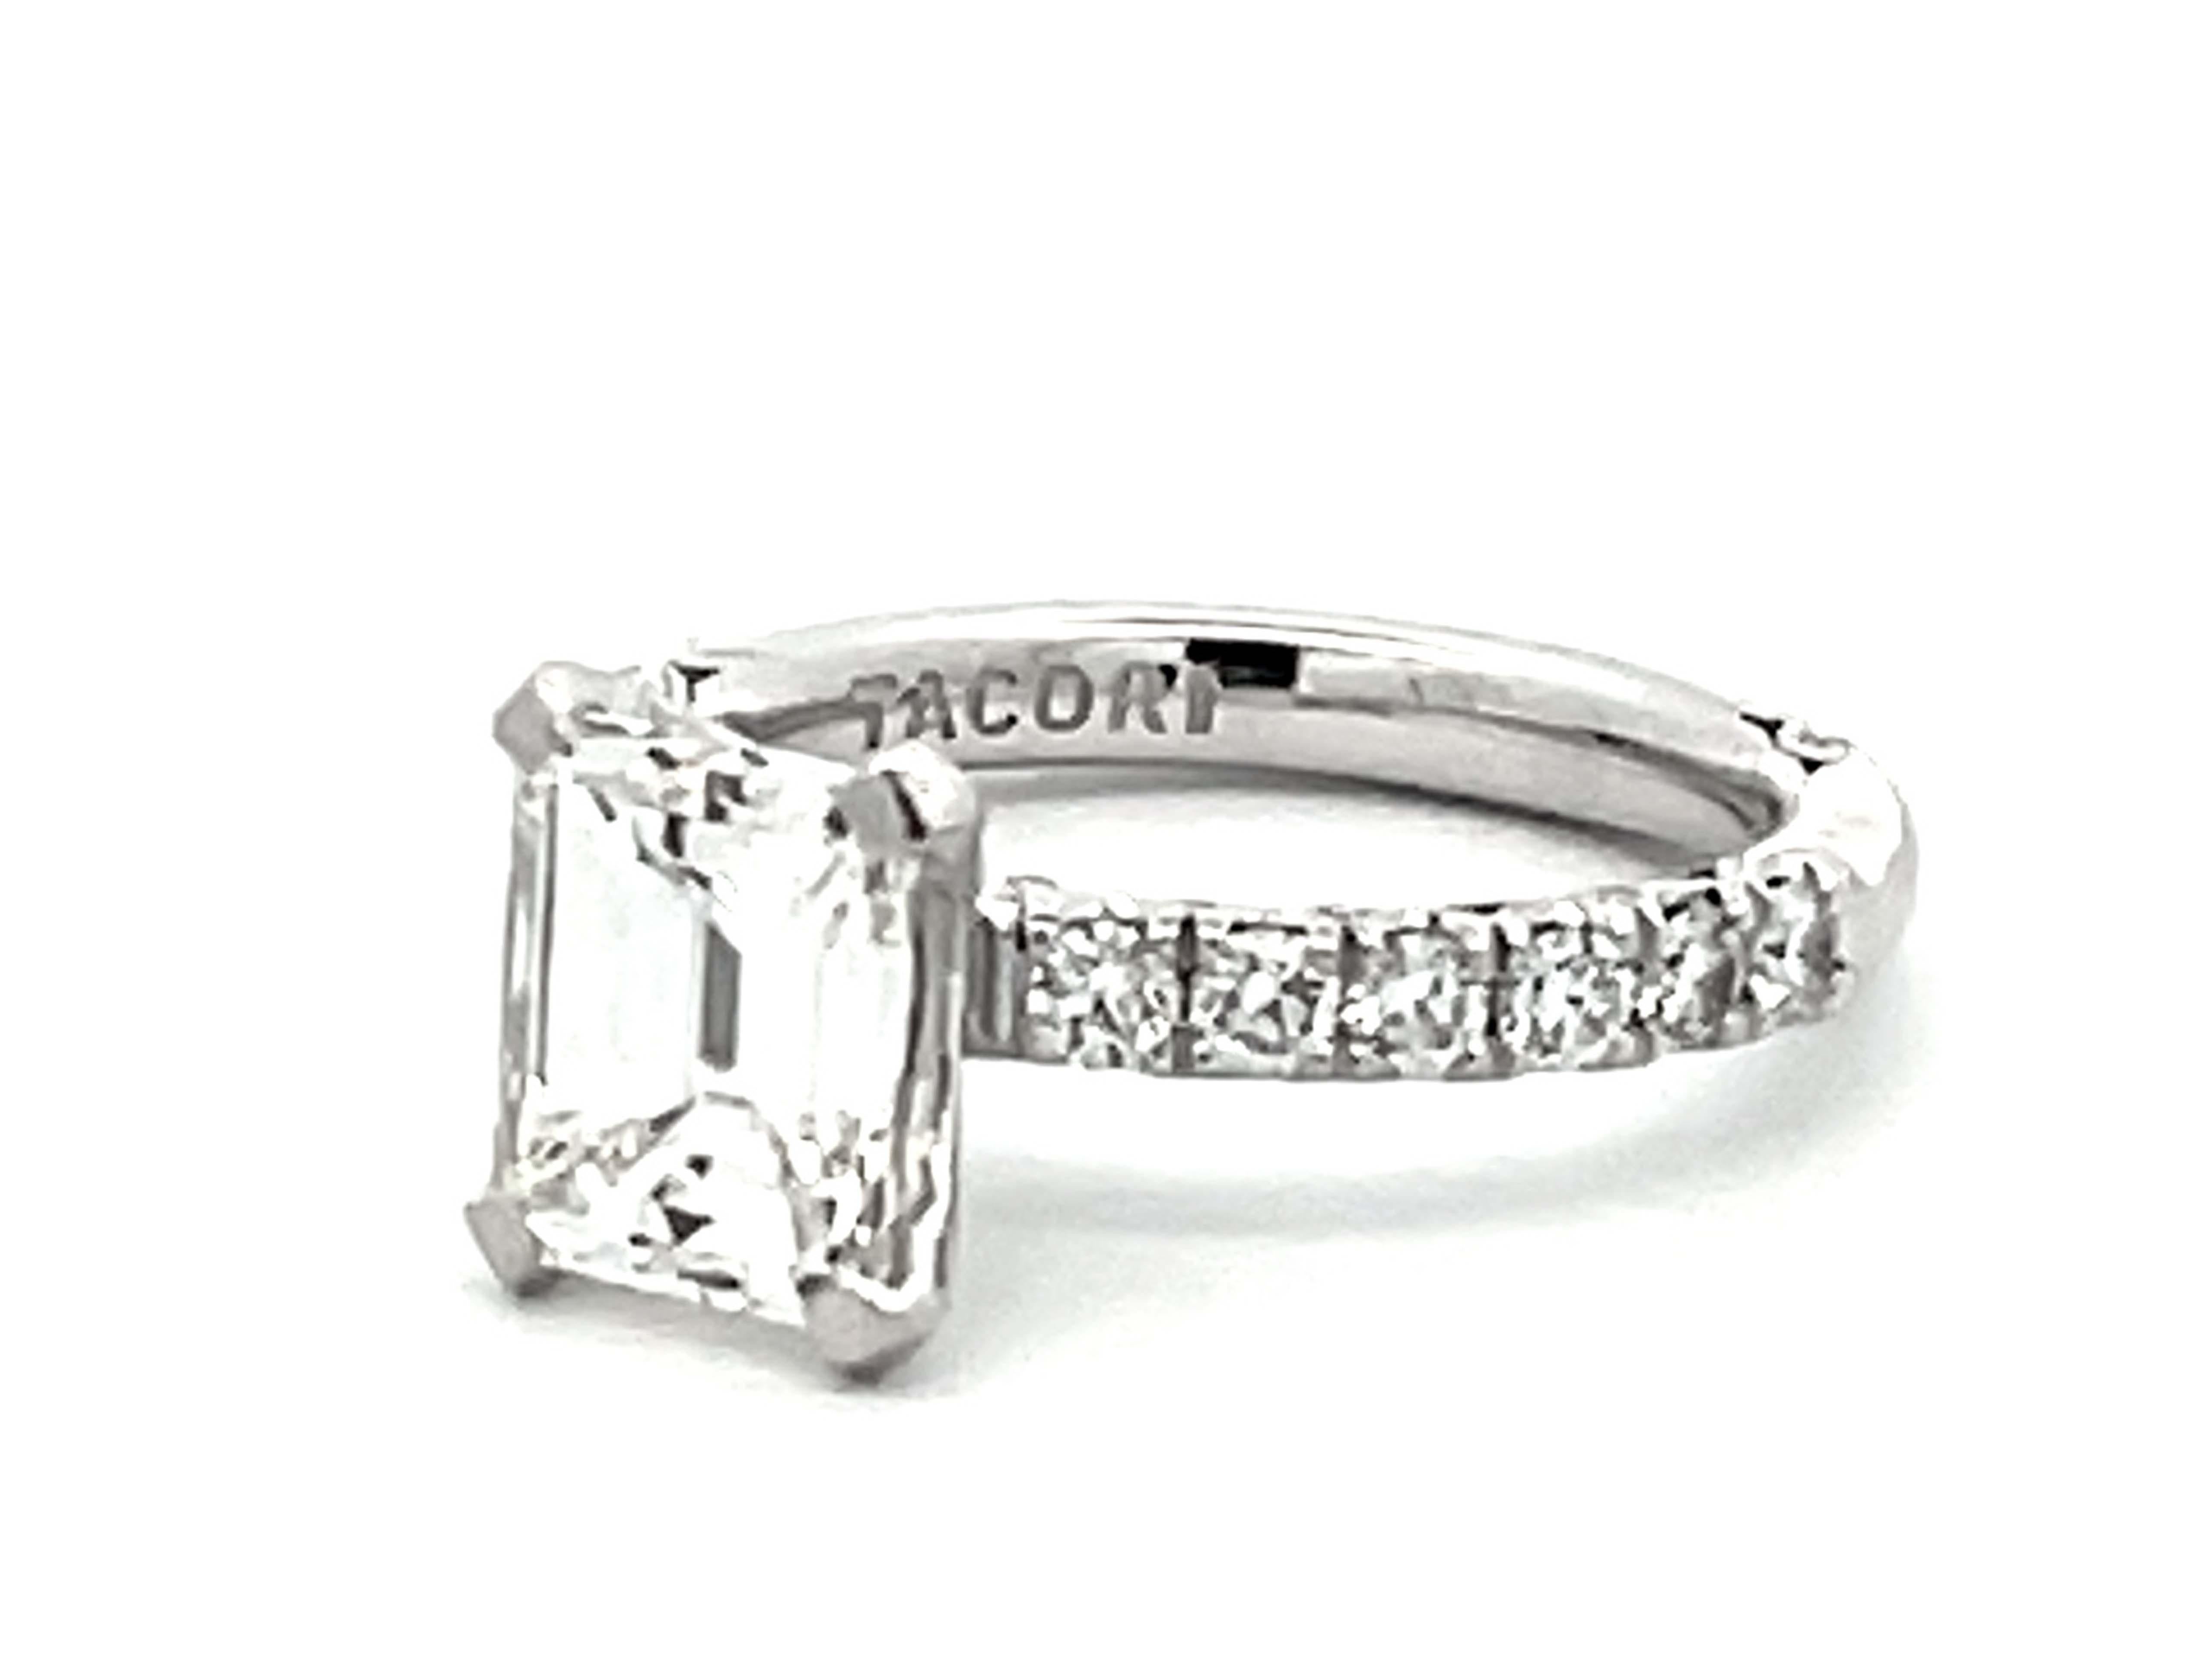 Tacori 2 Carat Emerald Cut Diamond Engagement Ring Platinum In Excellent Condition For Sale In Honolulu, HI